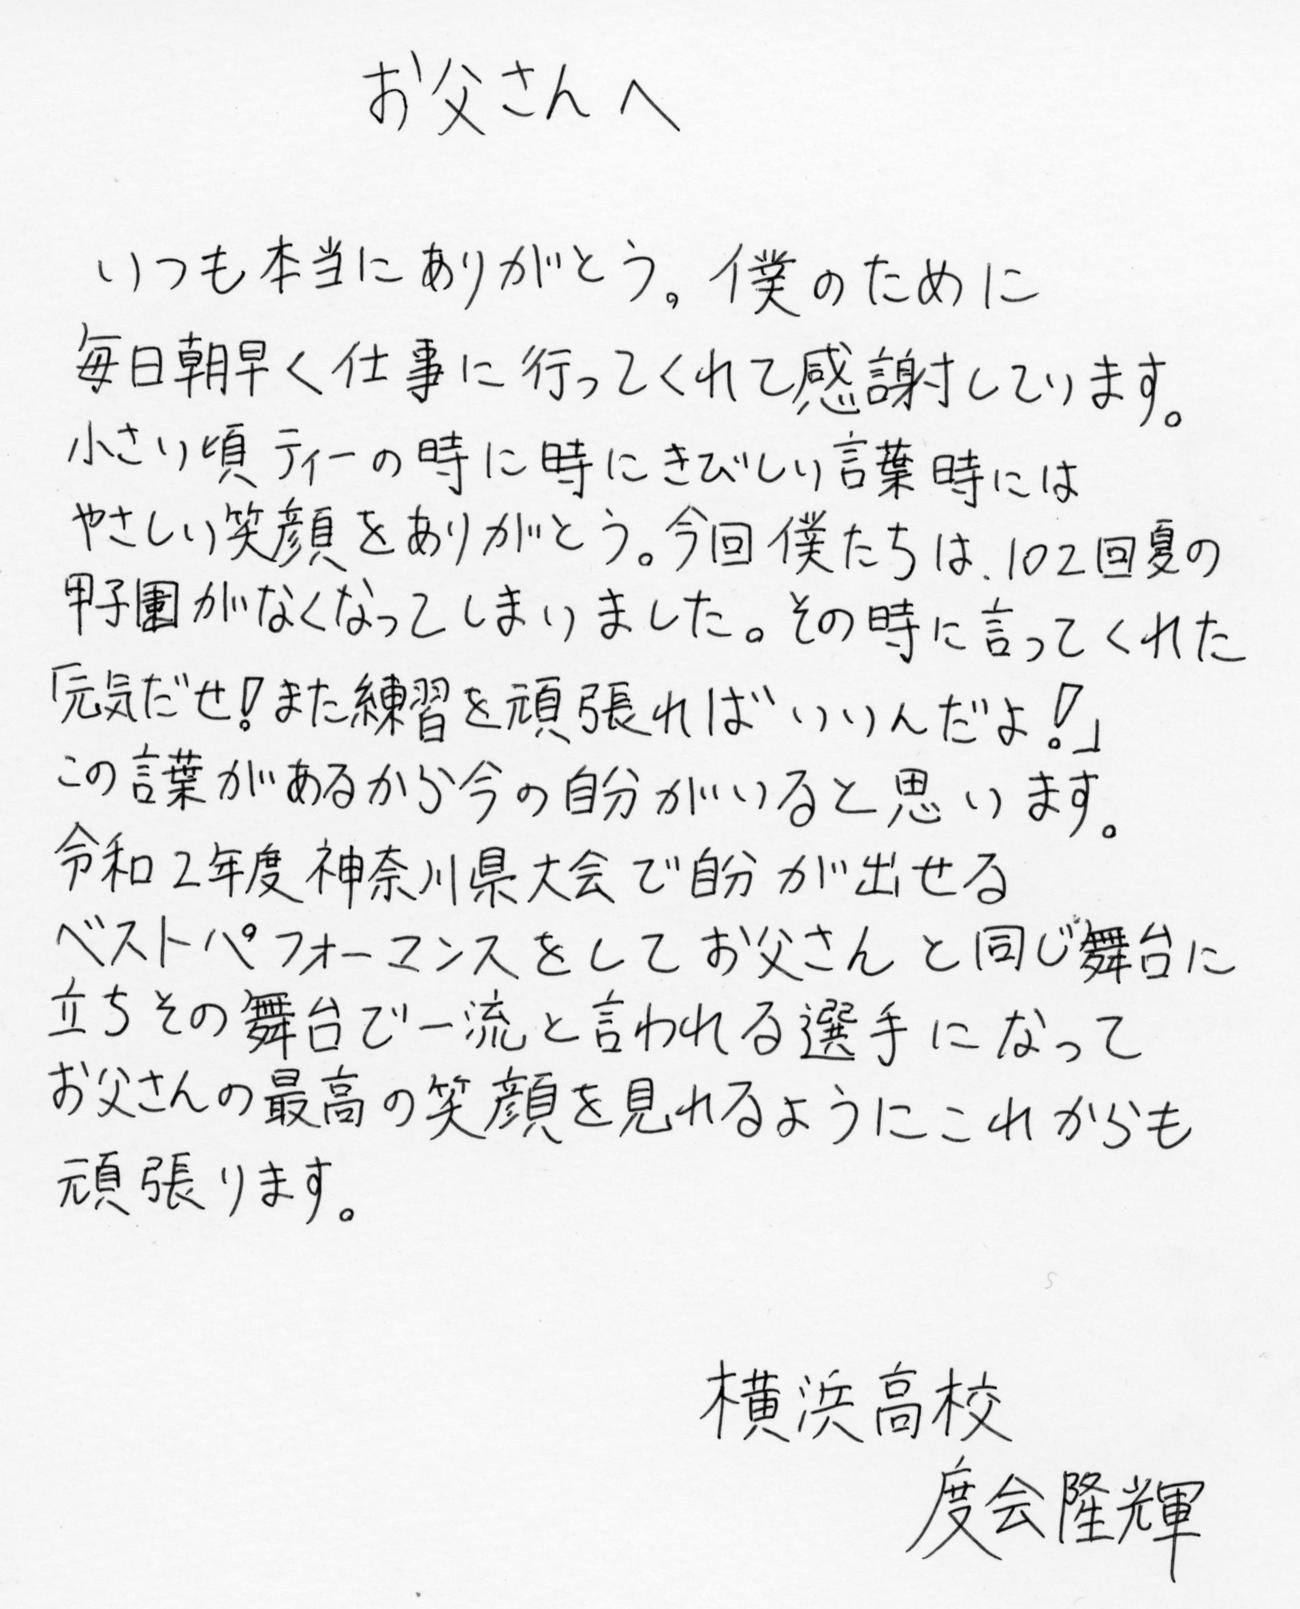 横浜・度会隆輝選手から父、度会博文氏への手紙